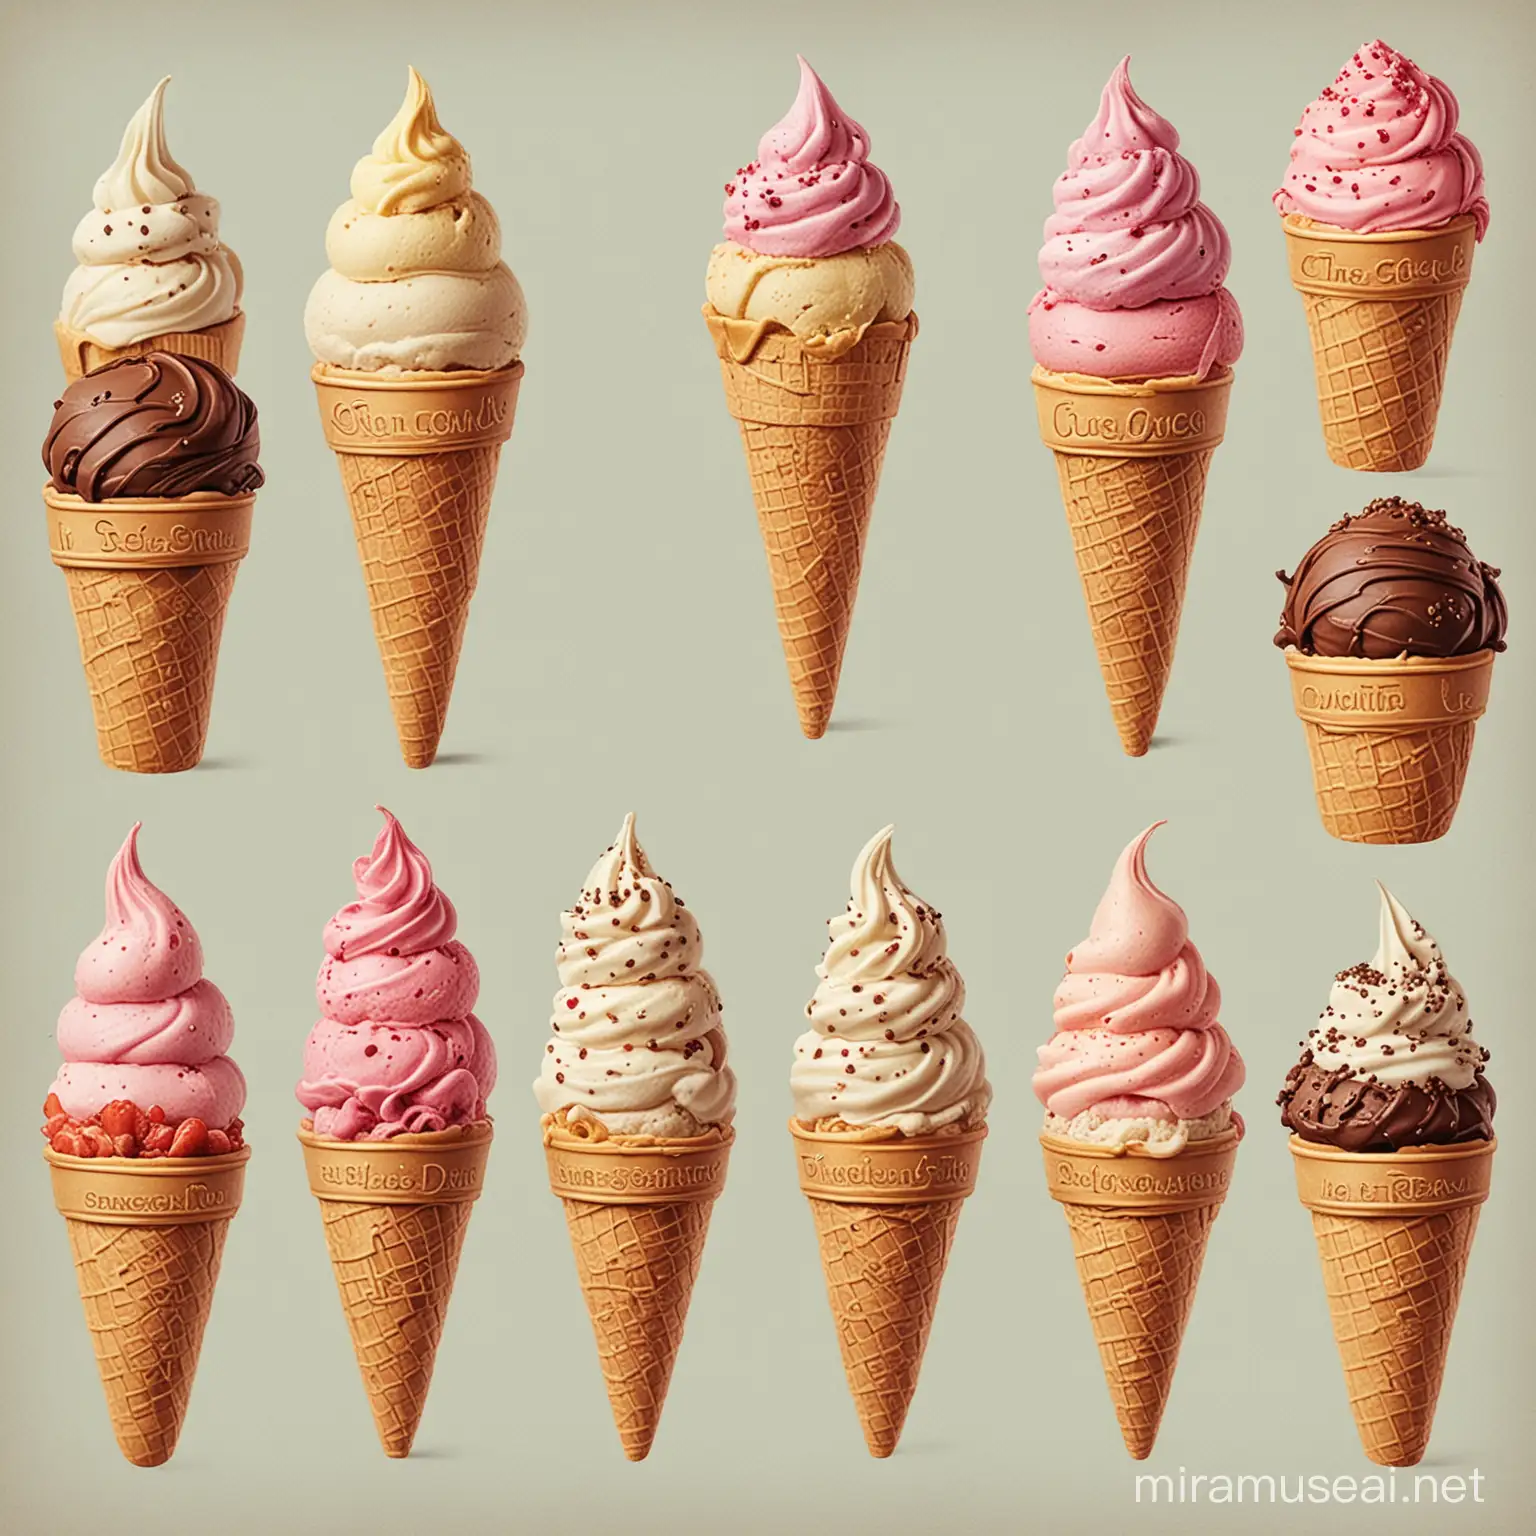 Delightful Cone Delight: A Line-Drawn Ice Cream Treat
